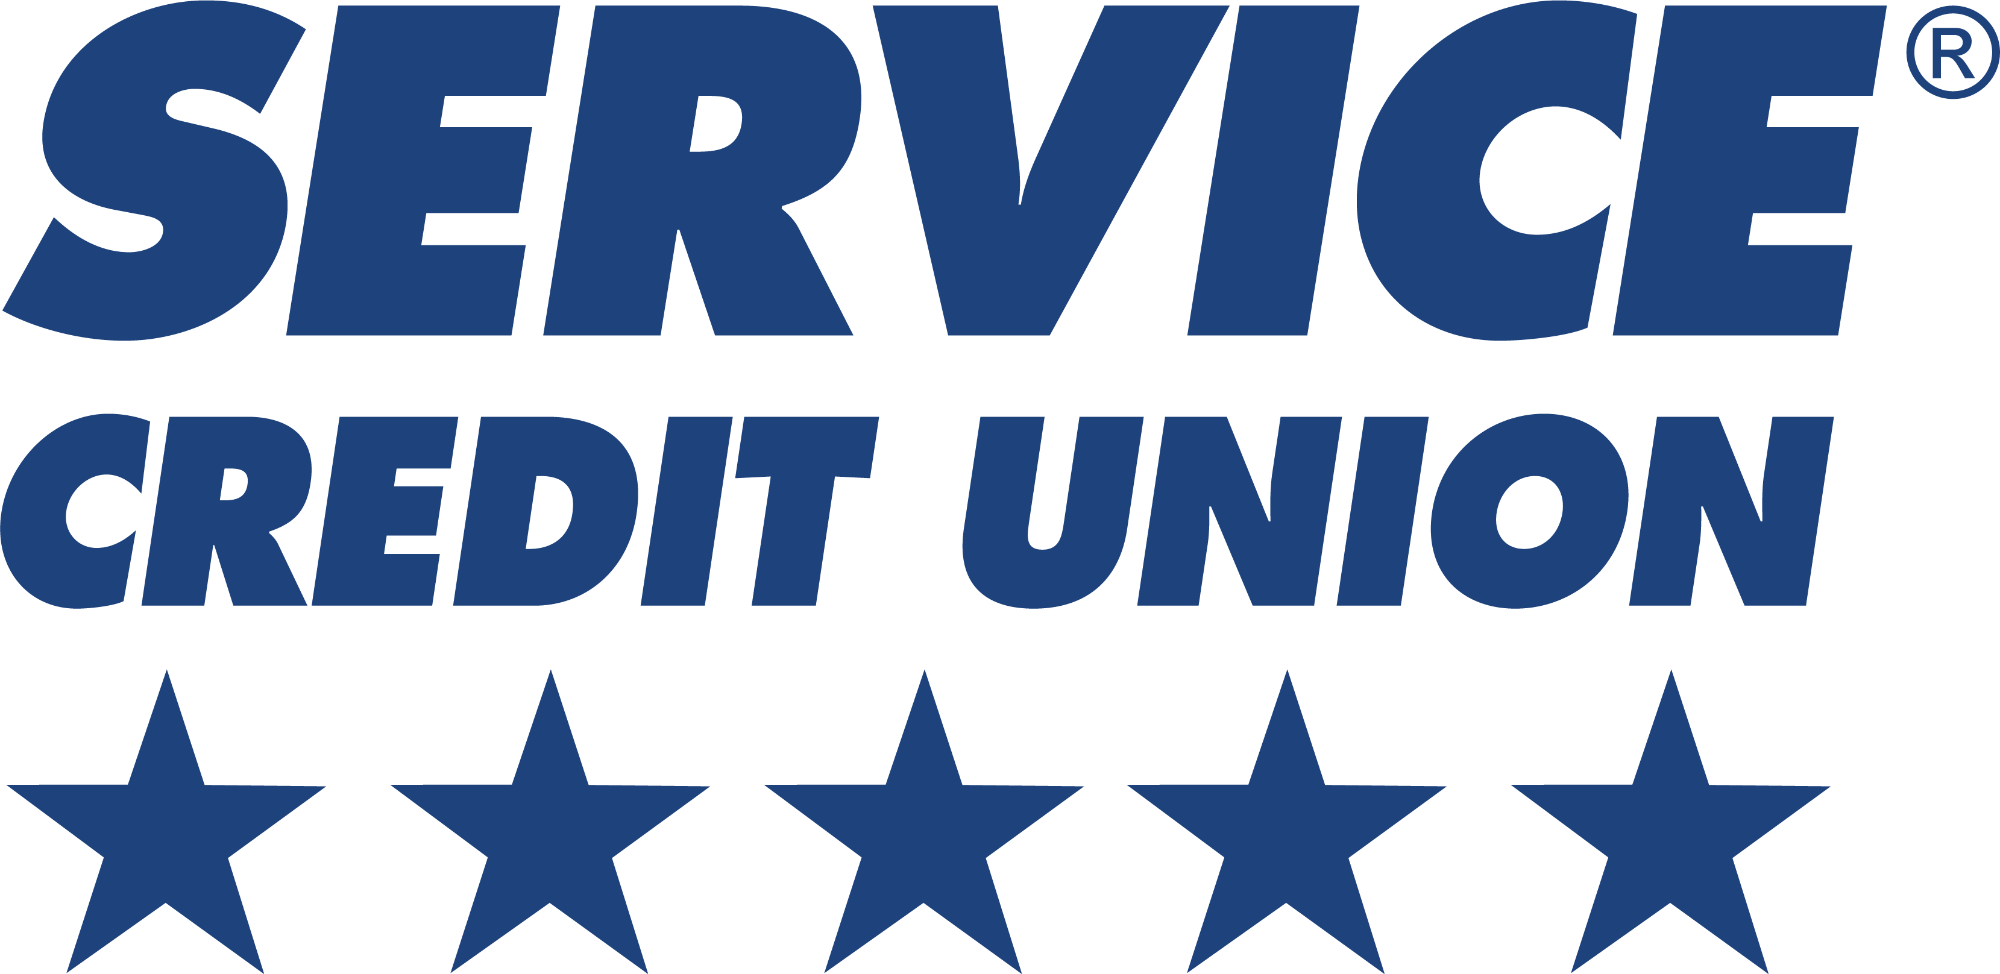 Service credit union color.png